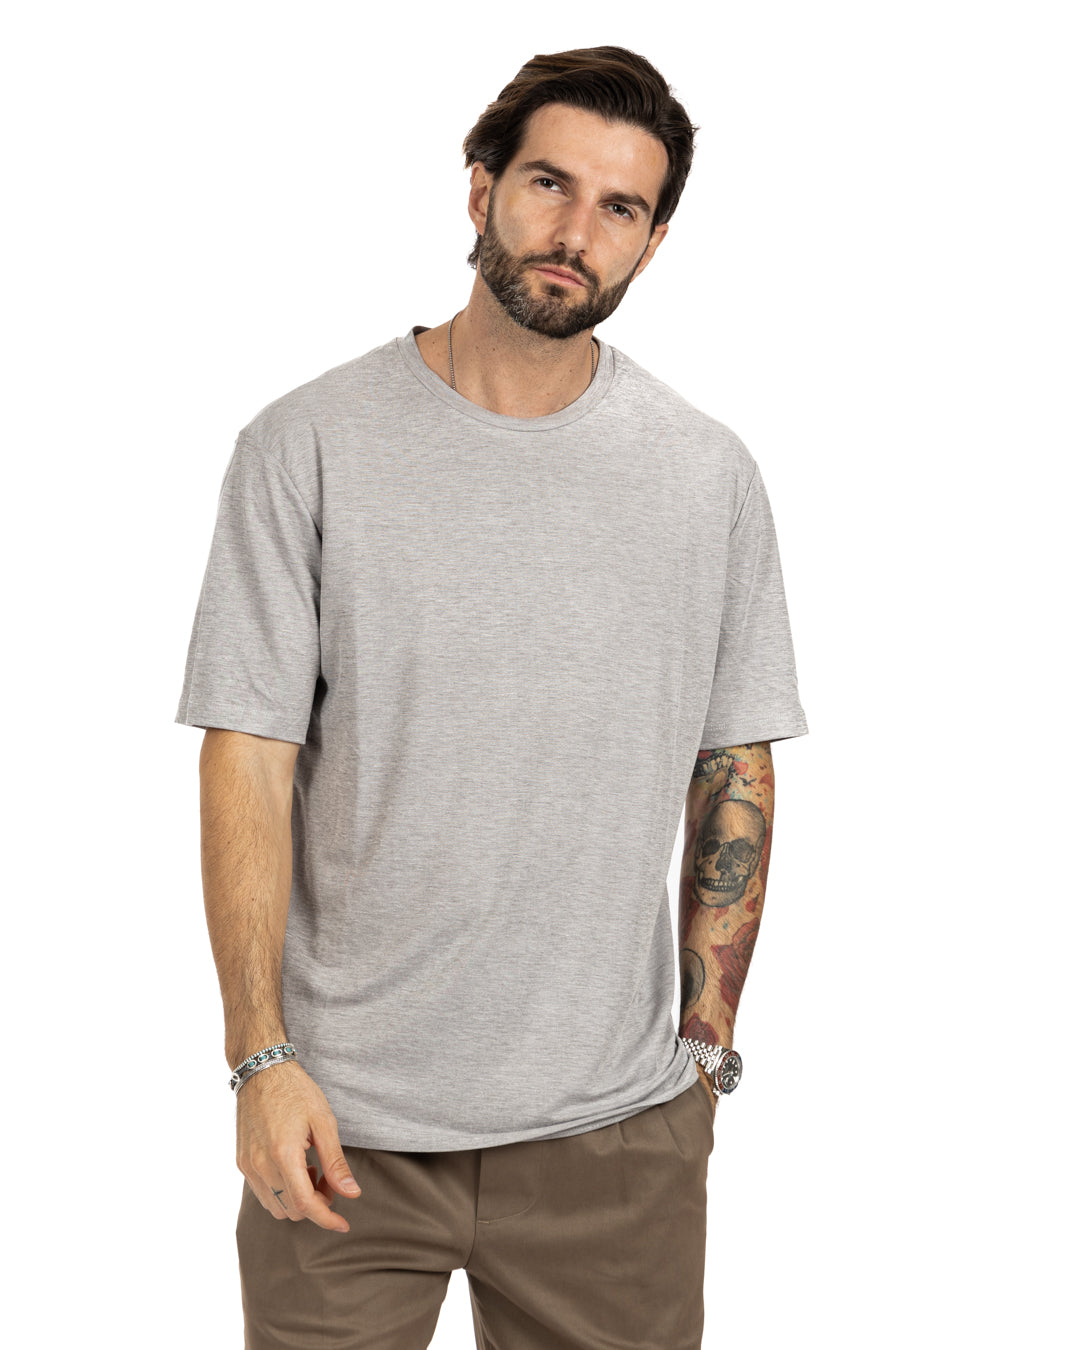 Tee - t-shirt texturé basique gris